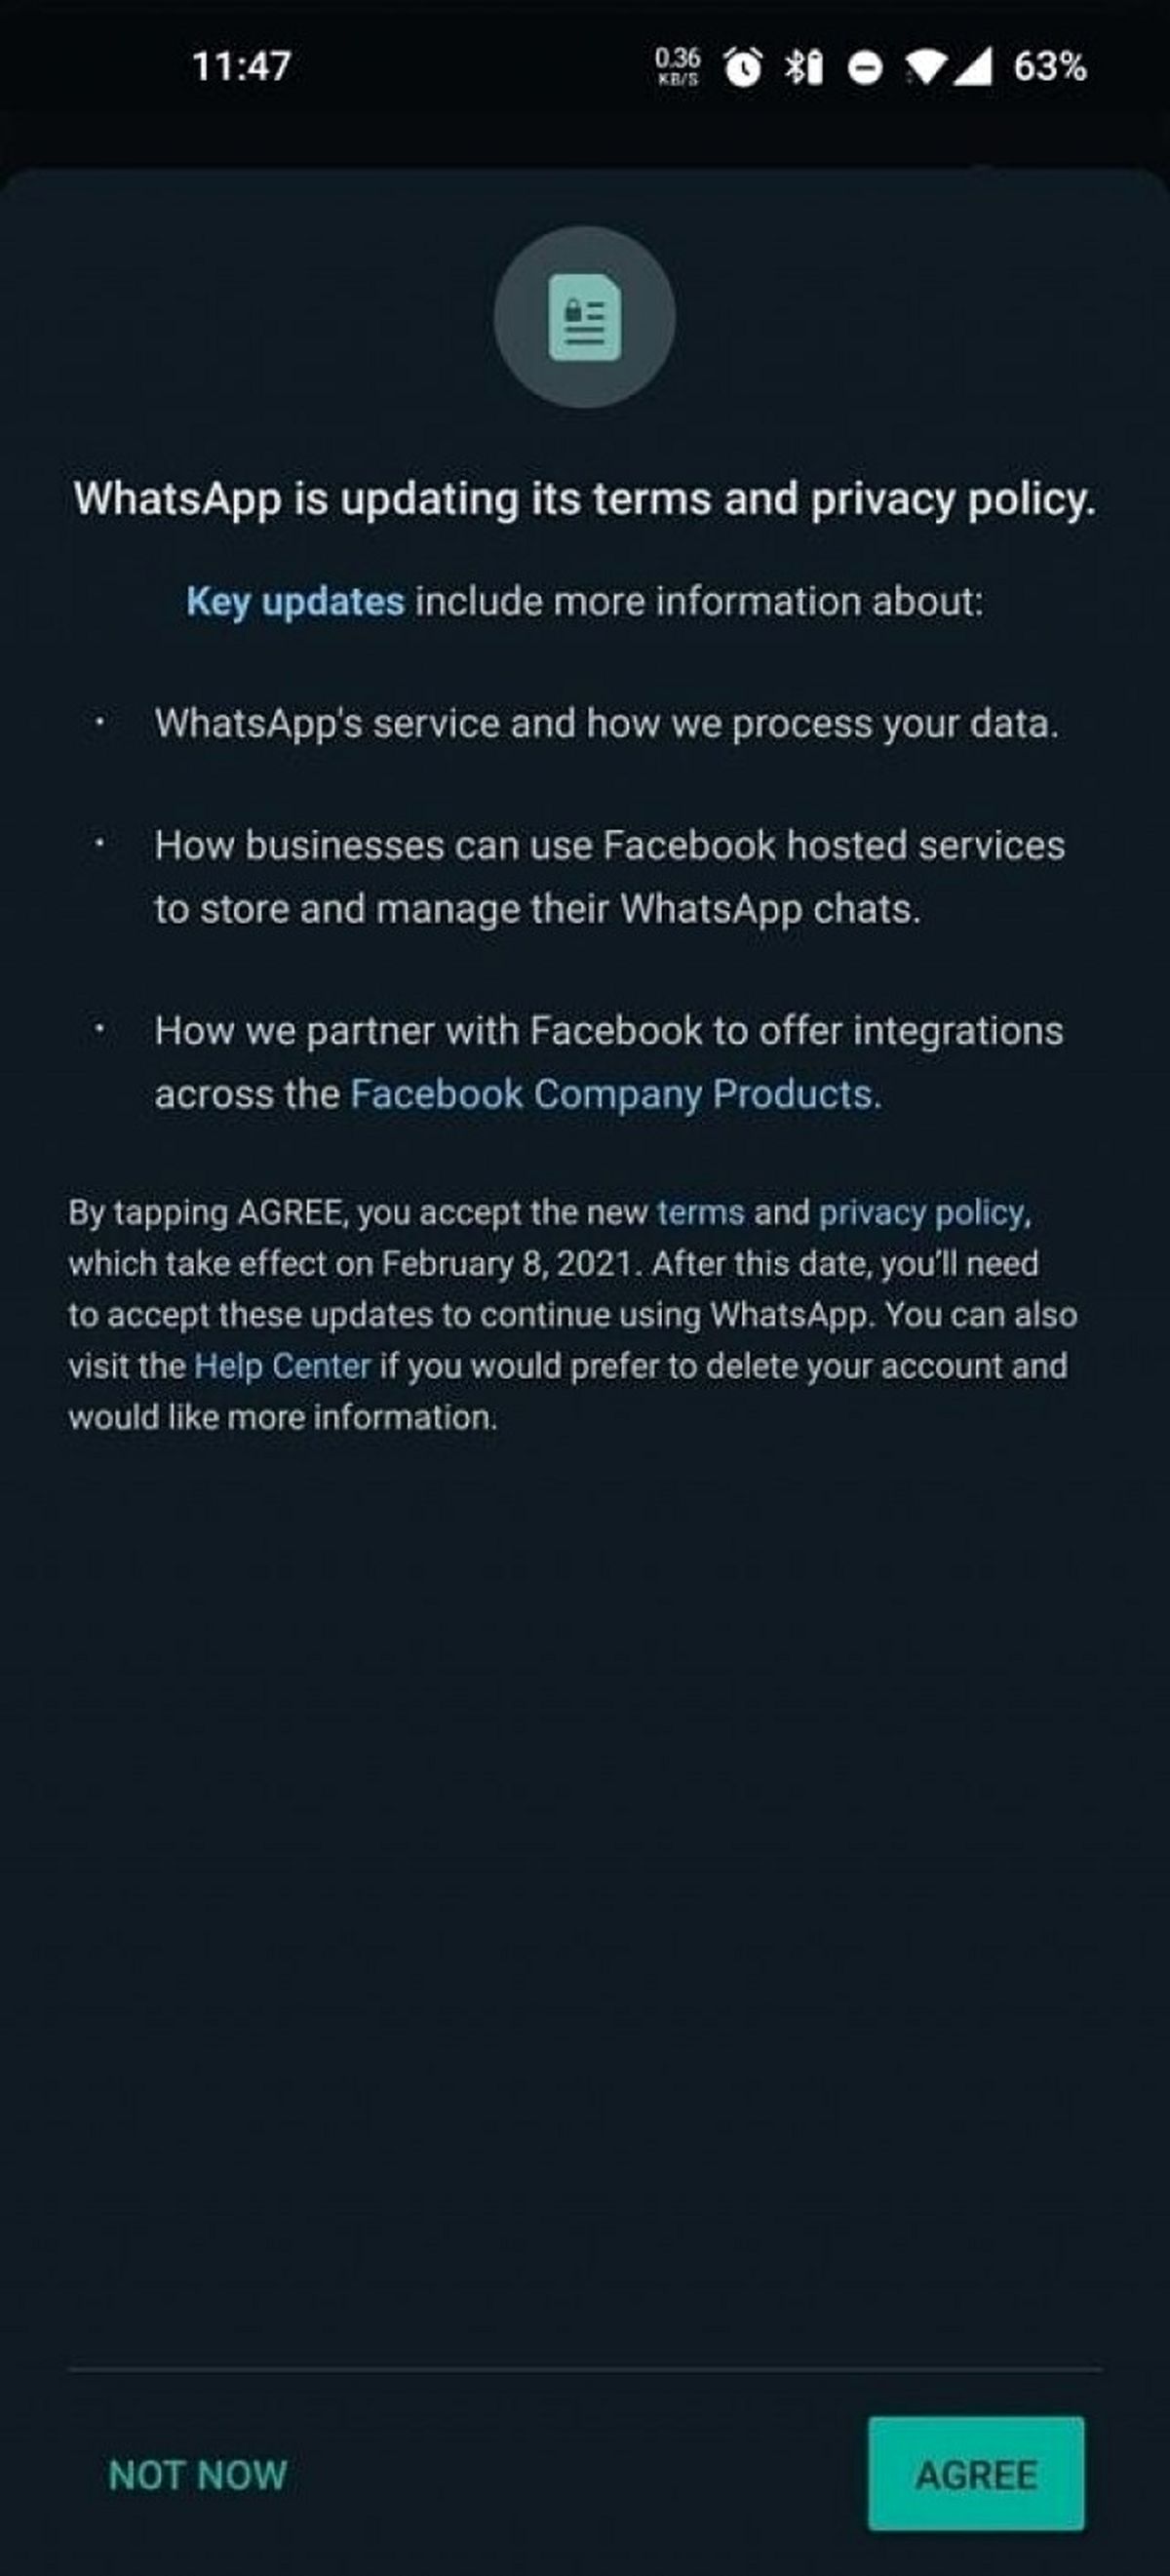 واتساپ اطلاعات کاربرانش را با Facebook به اشتراک می گذارد